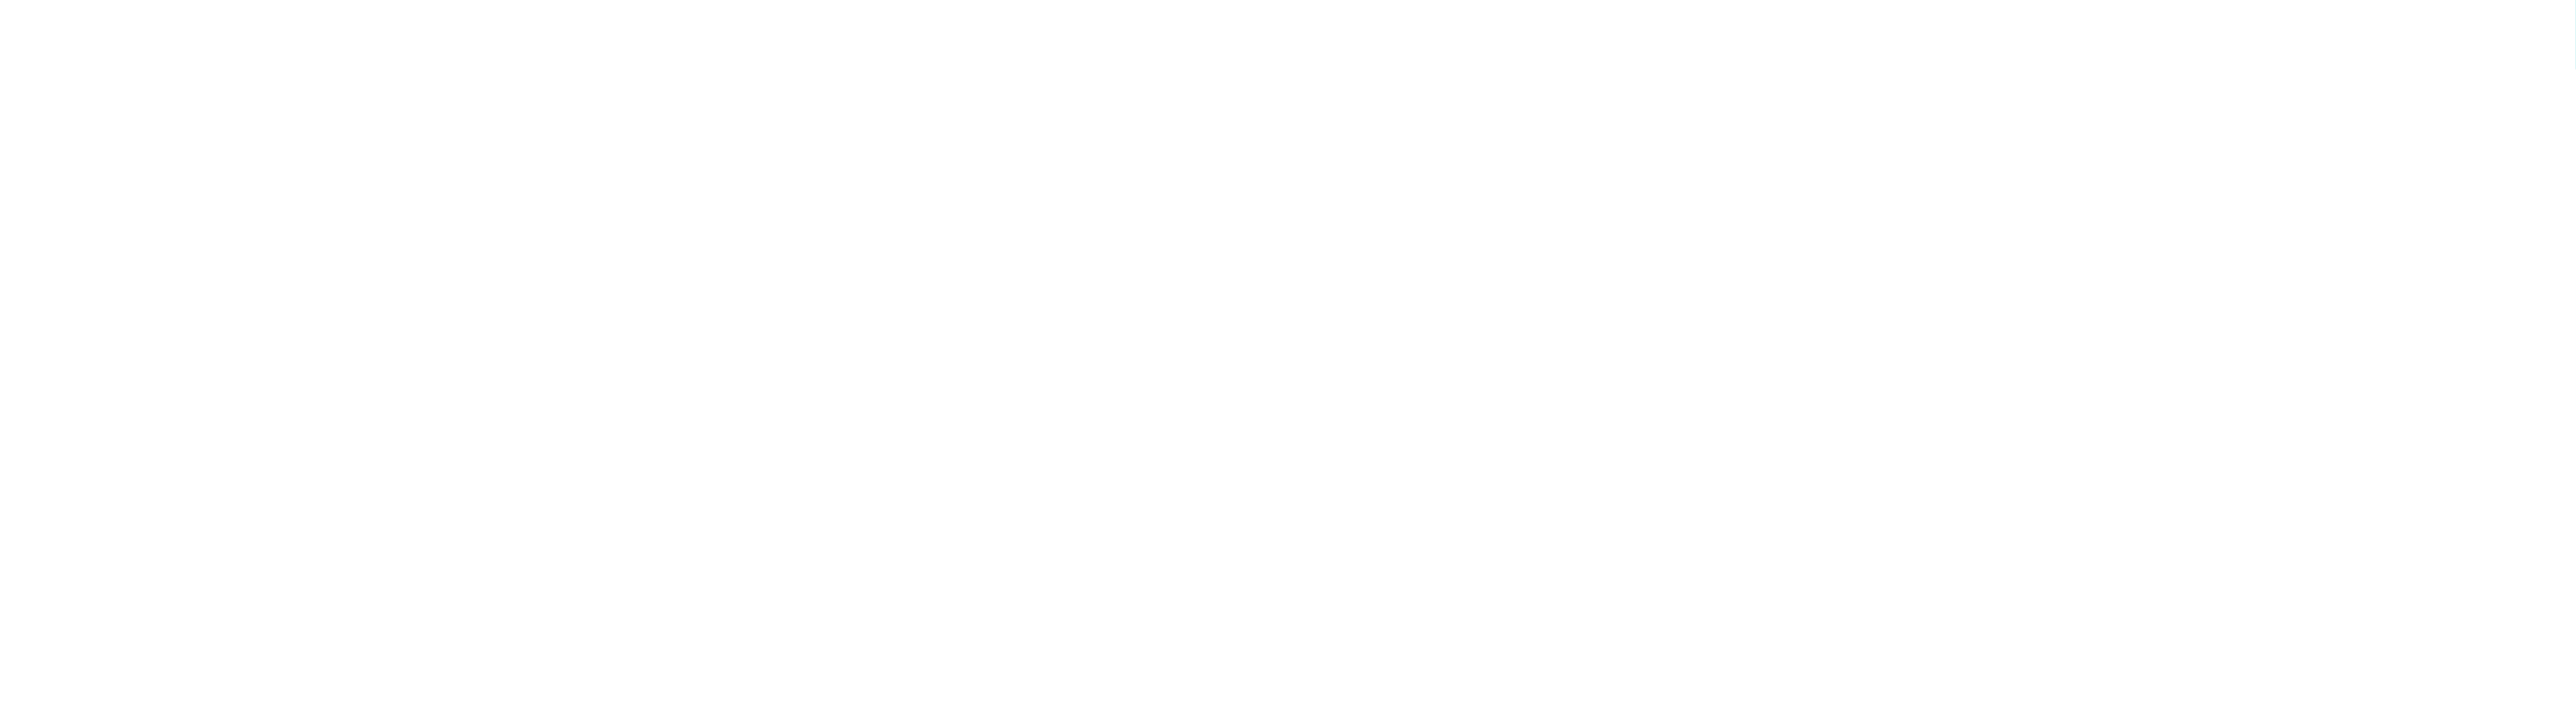 آویز فانوسی دکوراتیو مدرن در چهار رنگ سفید مشکی استیل بژ-قابلیت تنظیم ارتفاع-ساخت ایران-جنس بدنه آلومینیوم دایکاست آنادایز 09337764053